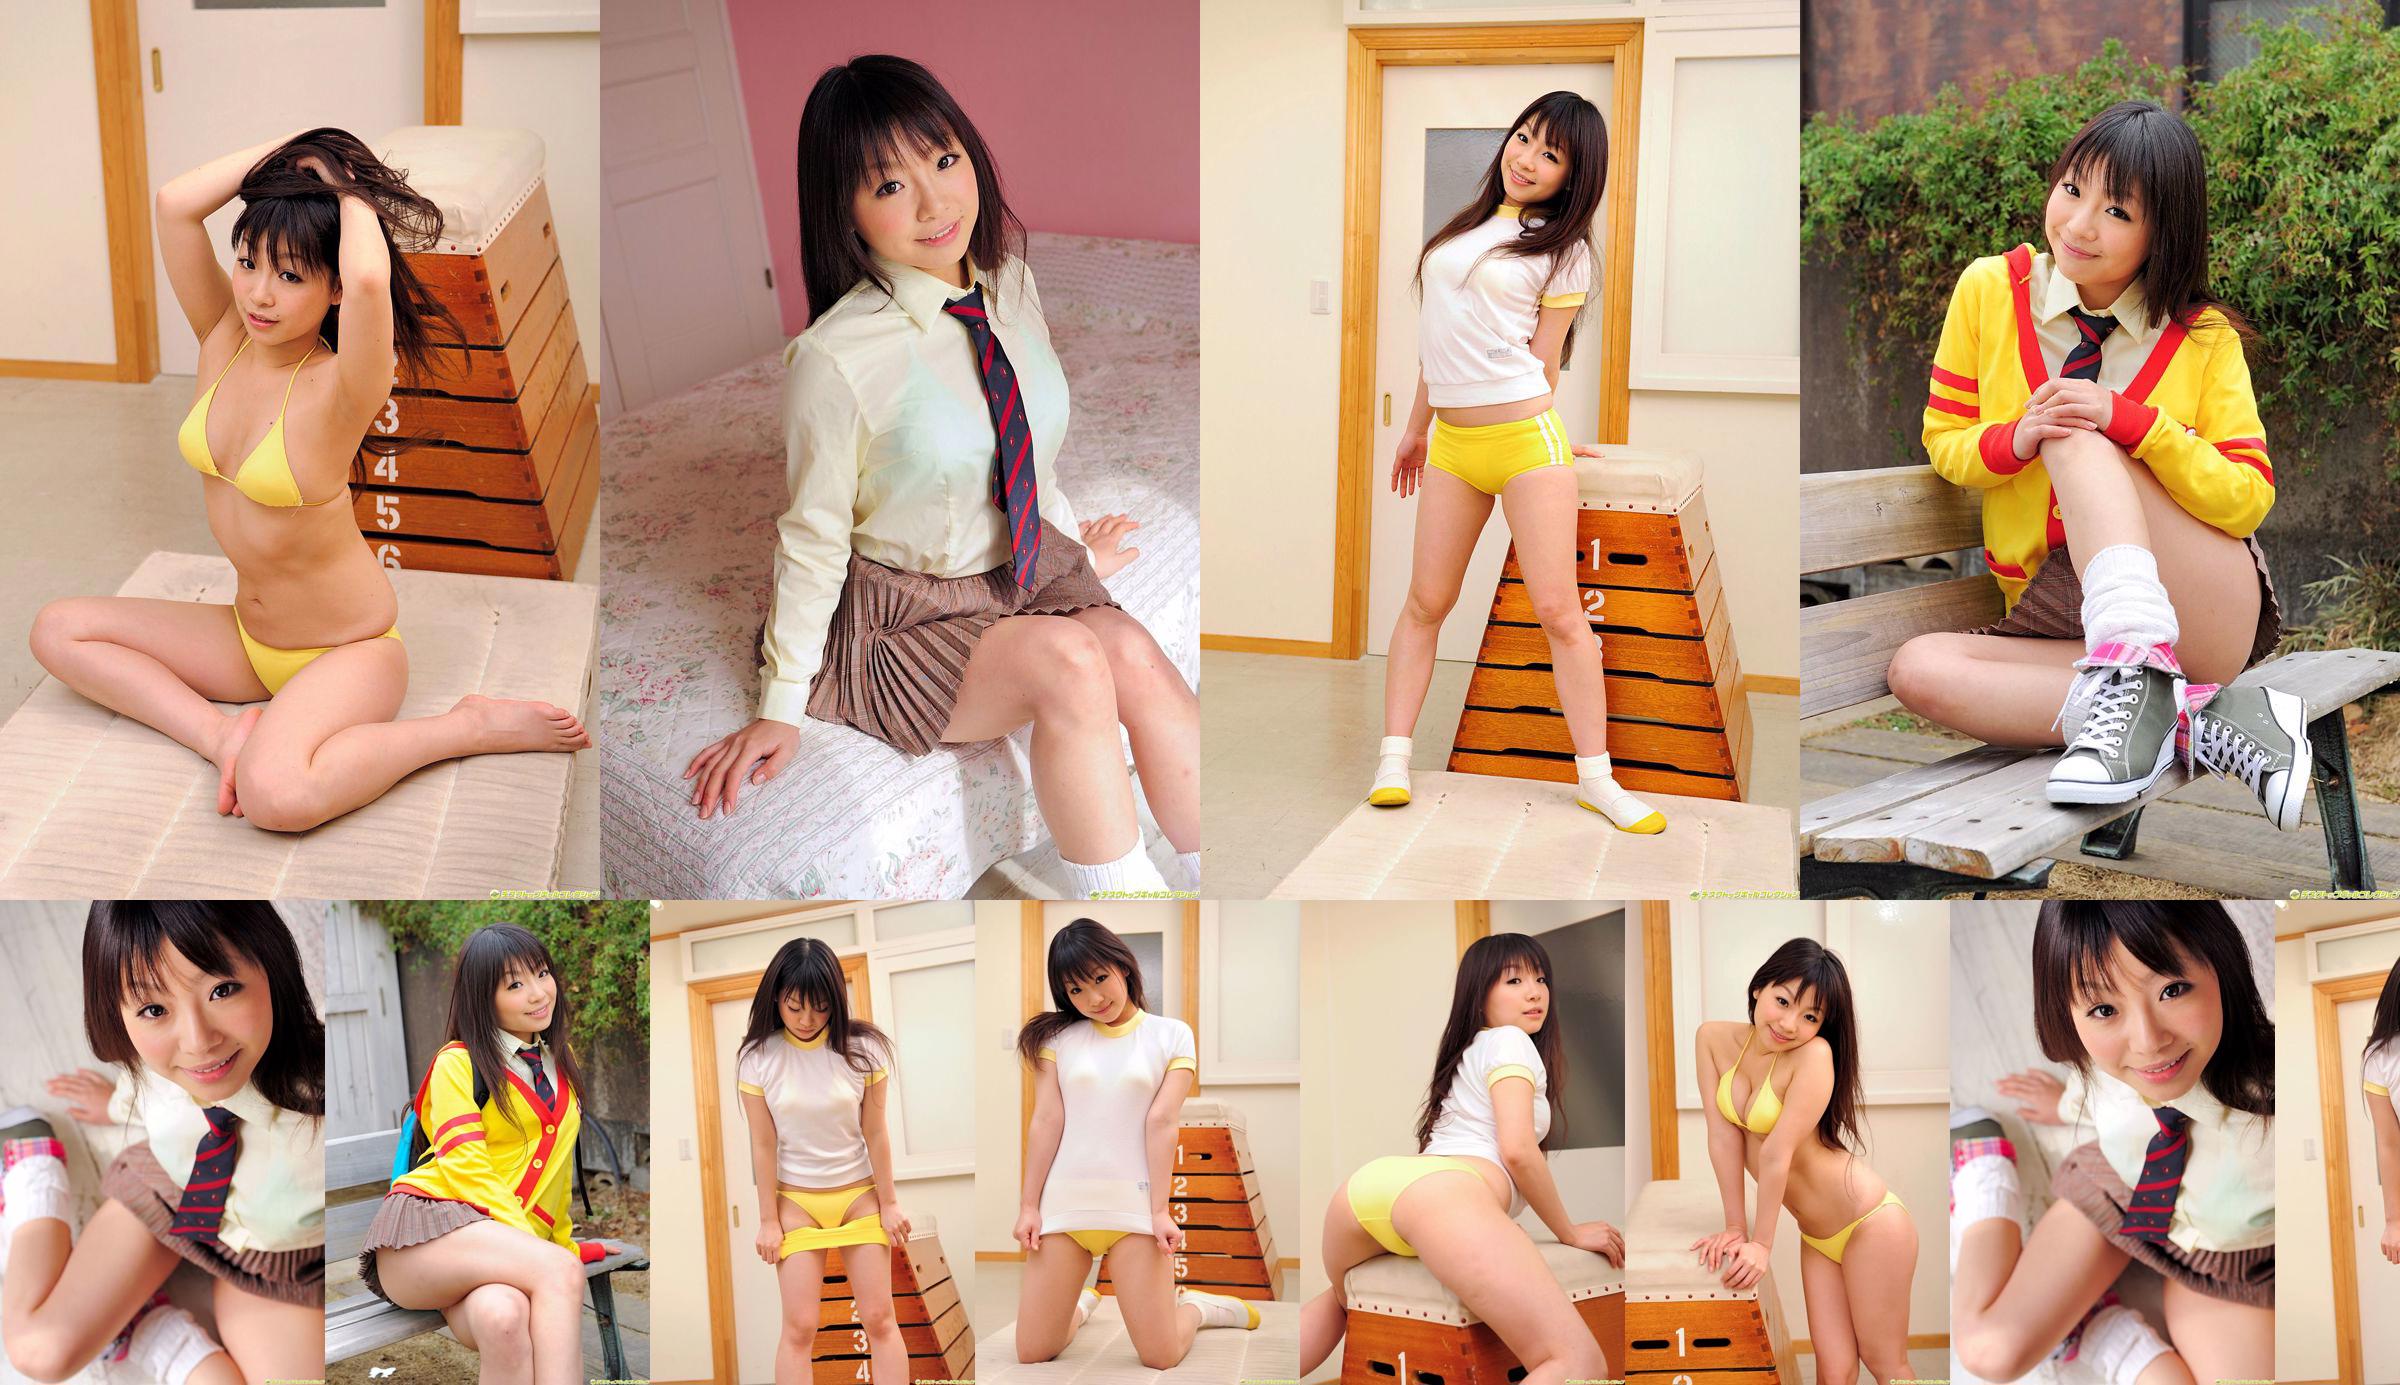 [DGC] NO.830 Sakura Haruno Haruno さくら Uniform beautiful girl paradise No.8e5a0b Page 6